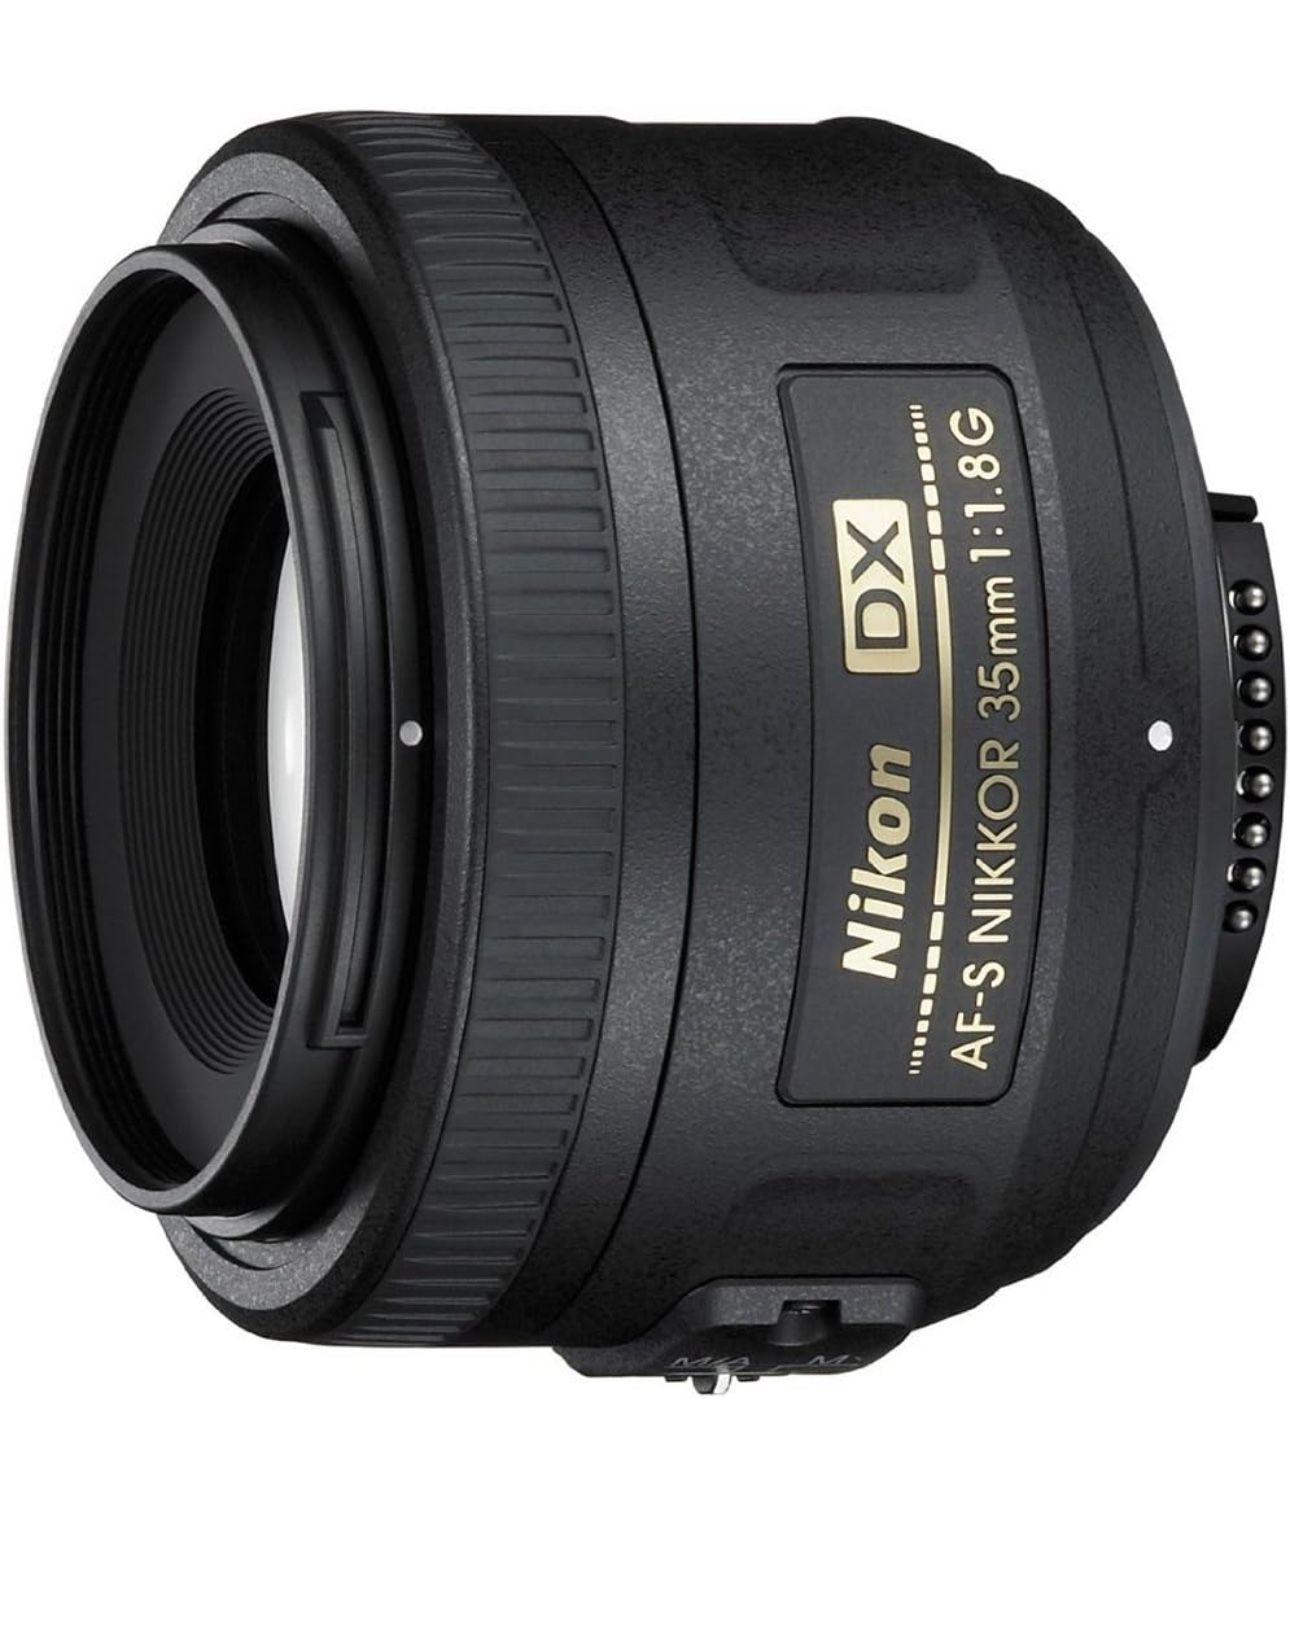 Nikon AF-S DX NIKKOR 35mm f/1.8G Lens with Auto Focus 